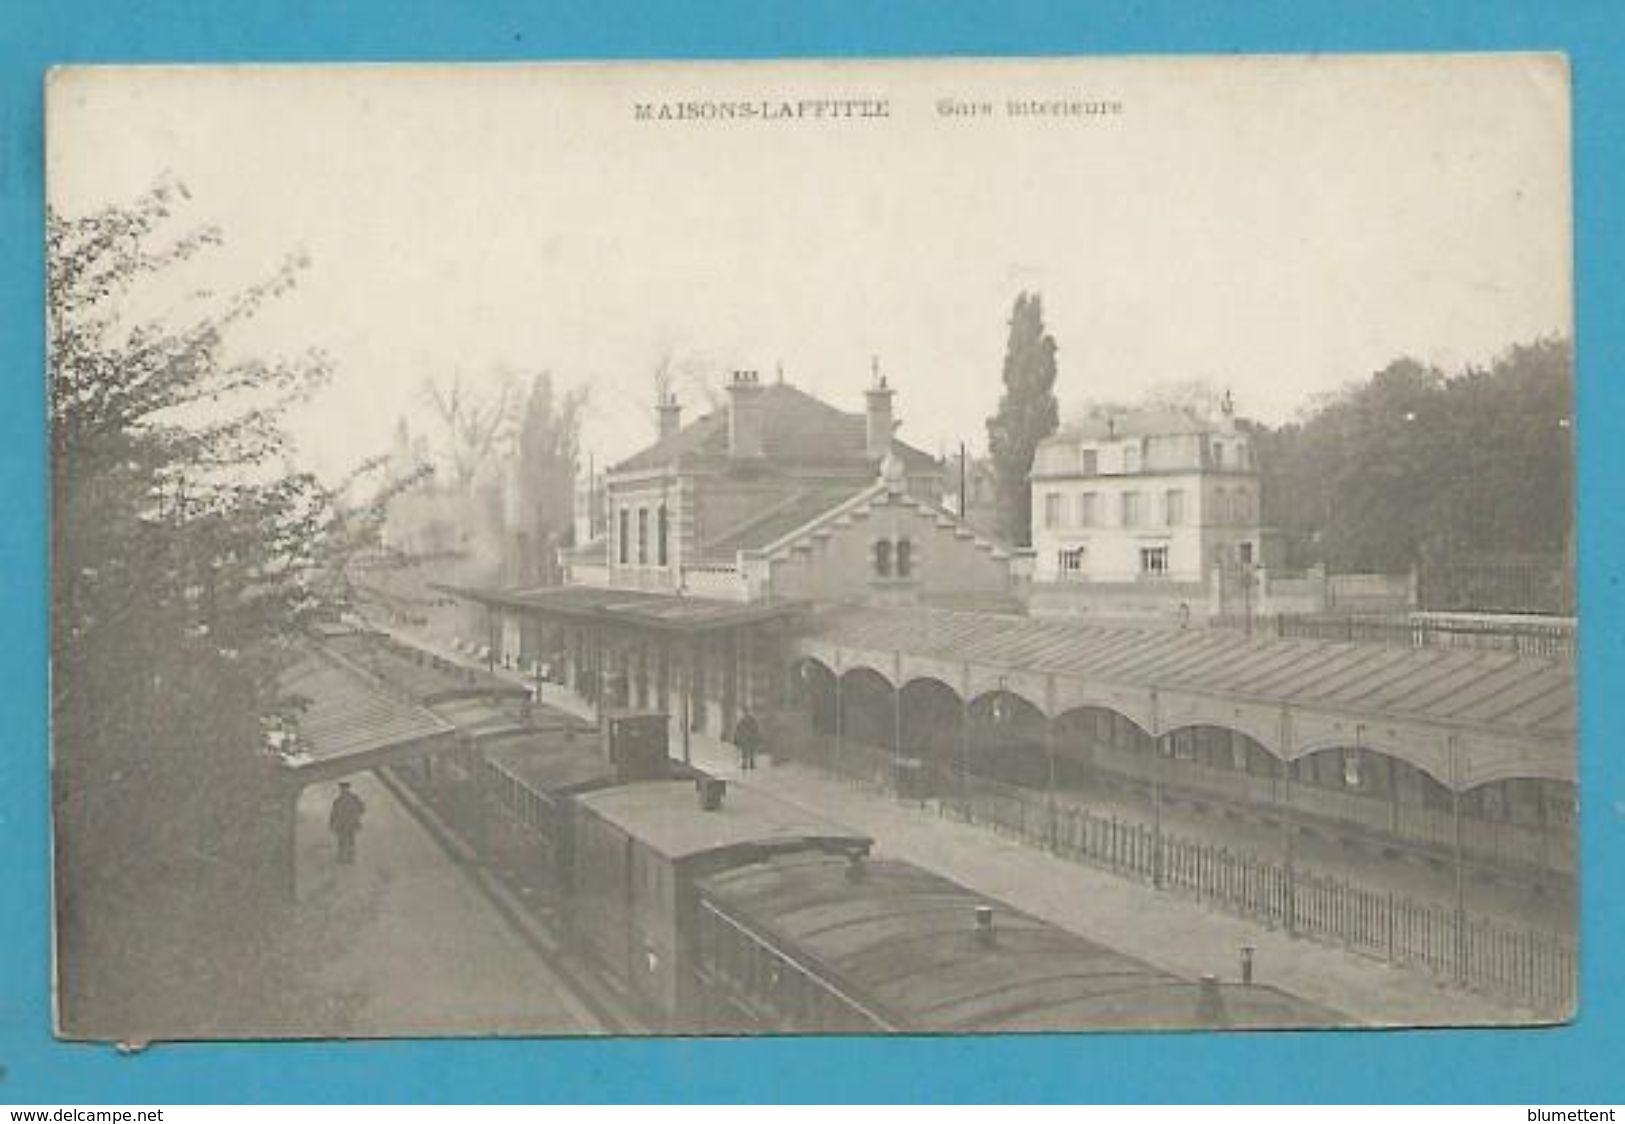 CPA - Chemin De Fer Arrivée Du Train La Gare MAISONS LAFFITTE 78 - Maisons-Laffitte